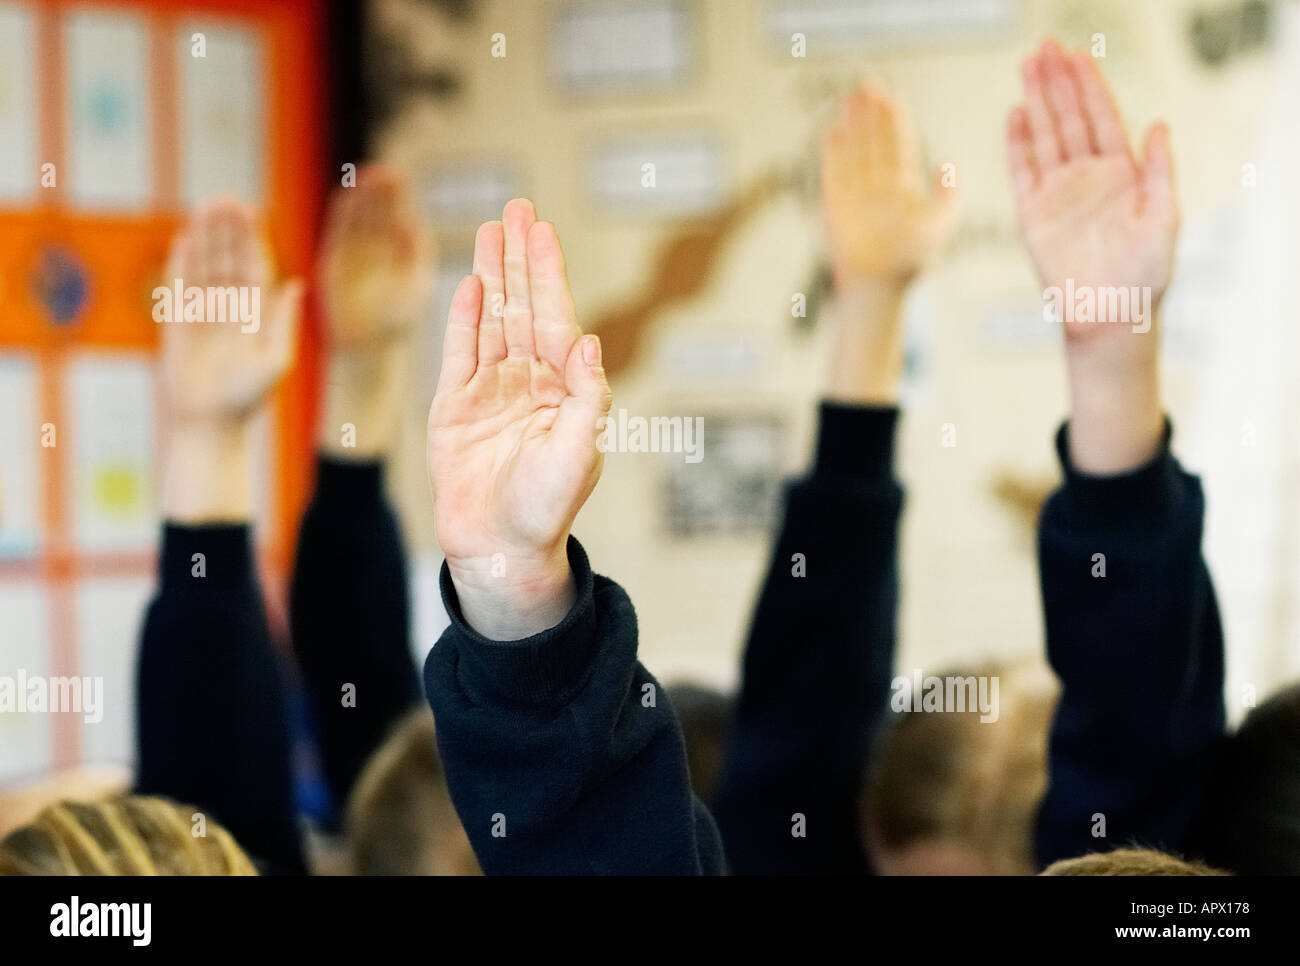 Les enfants de l'école avec les mains en l'air de vouloir répondre à une question Banque D'Images